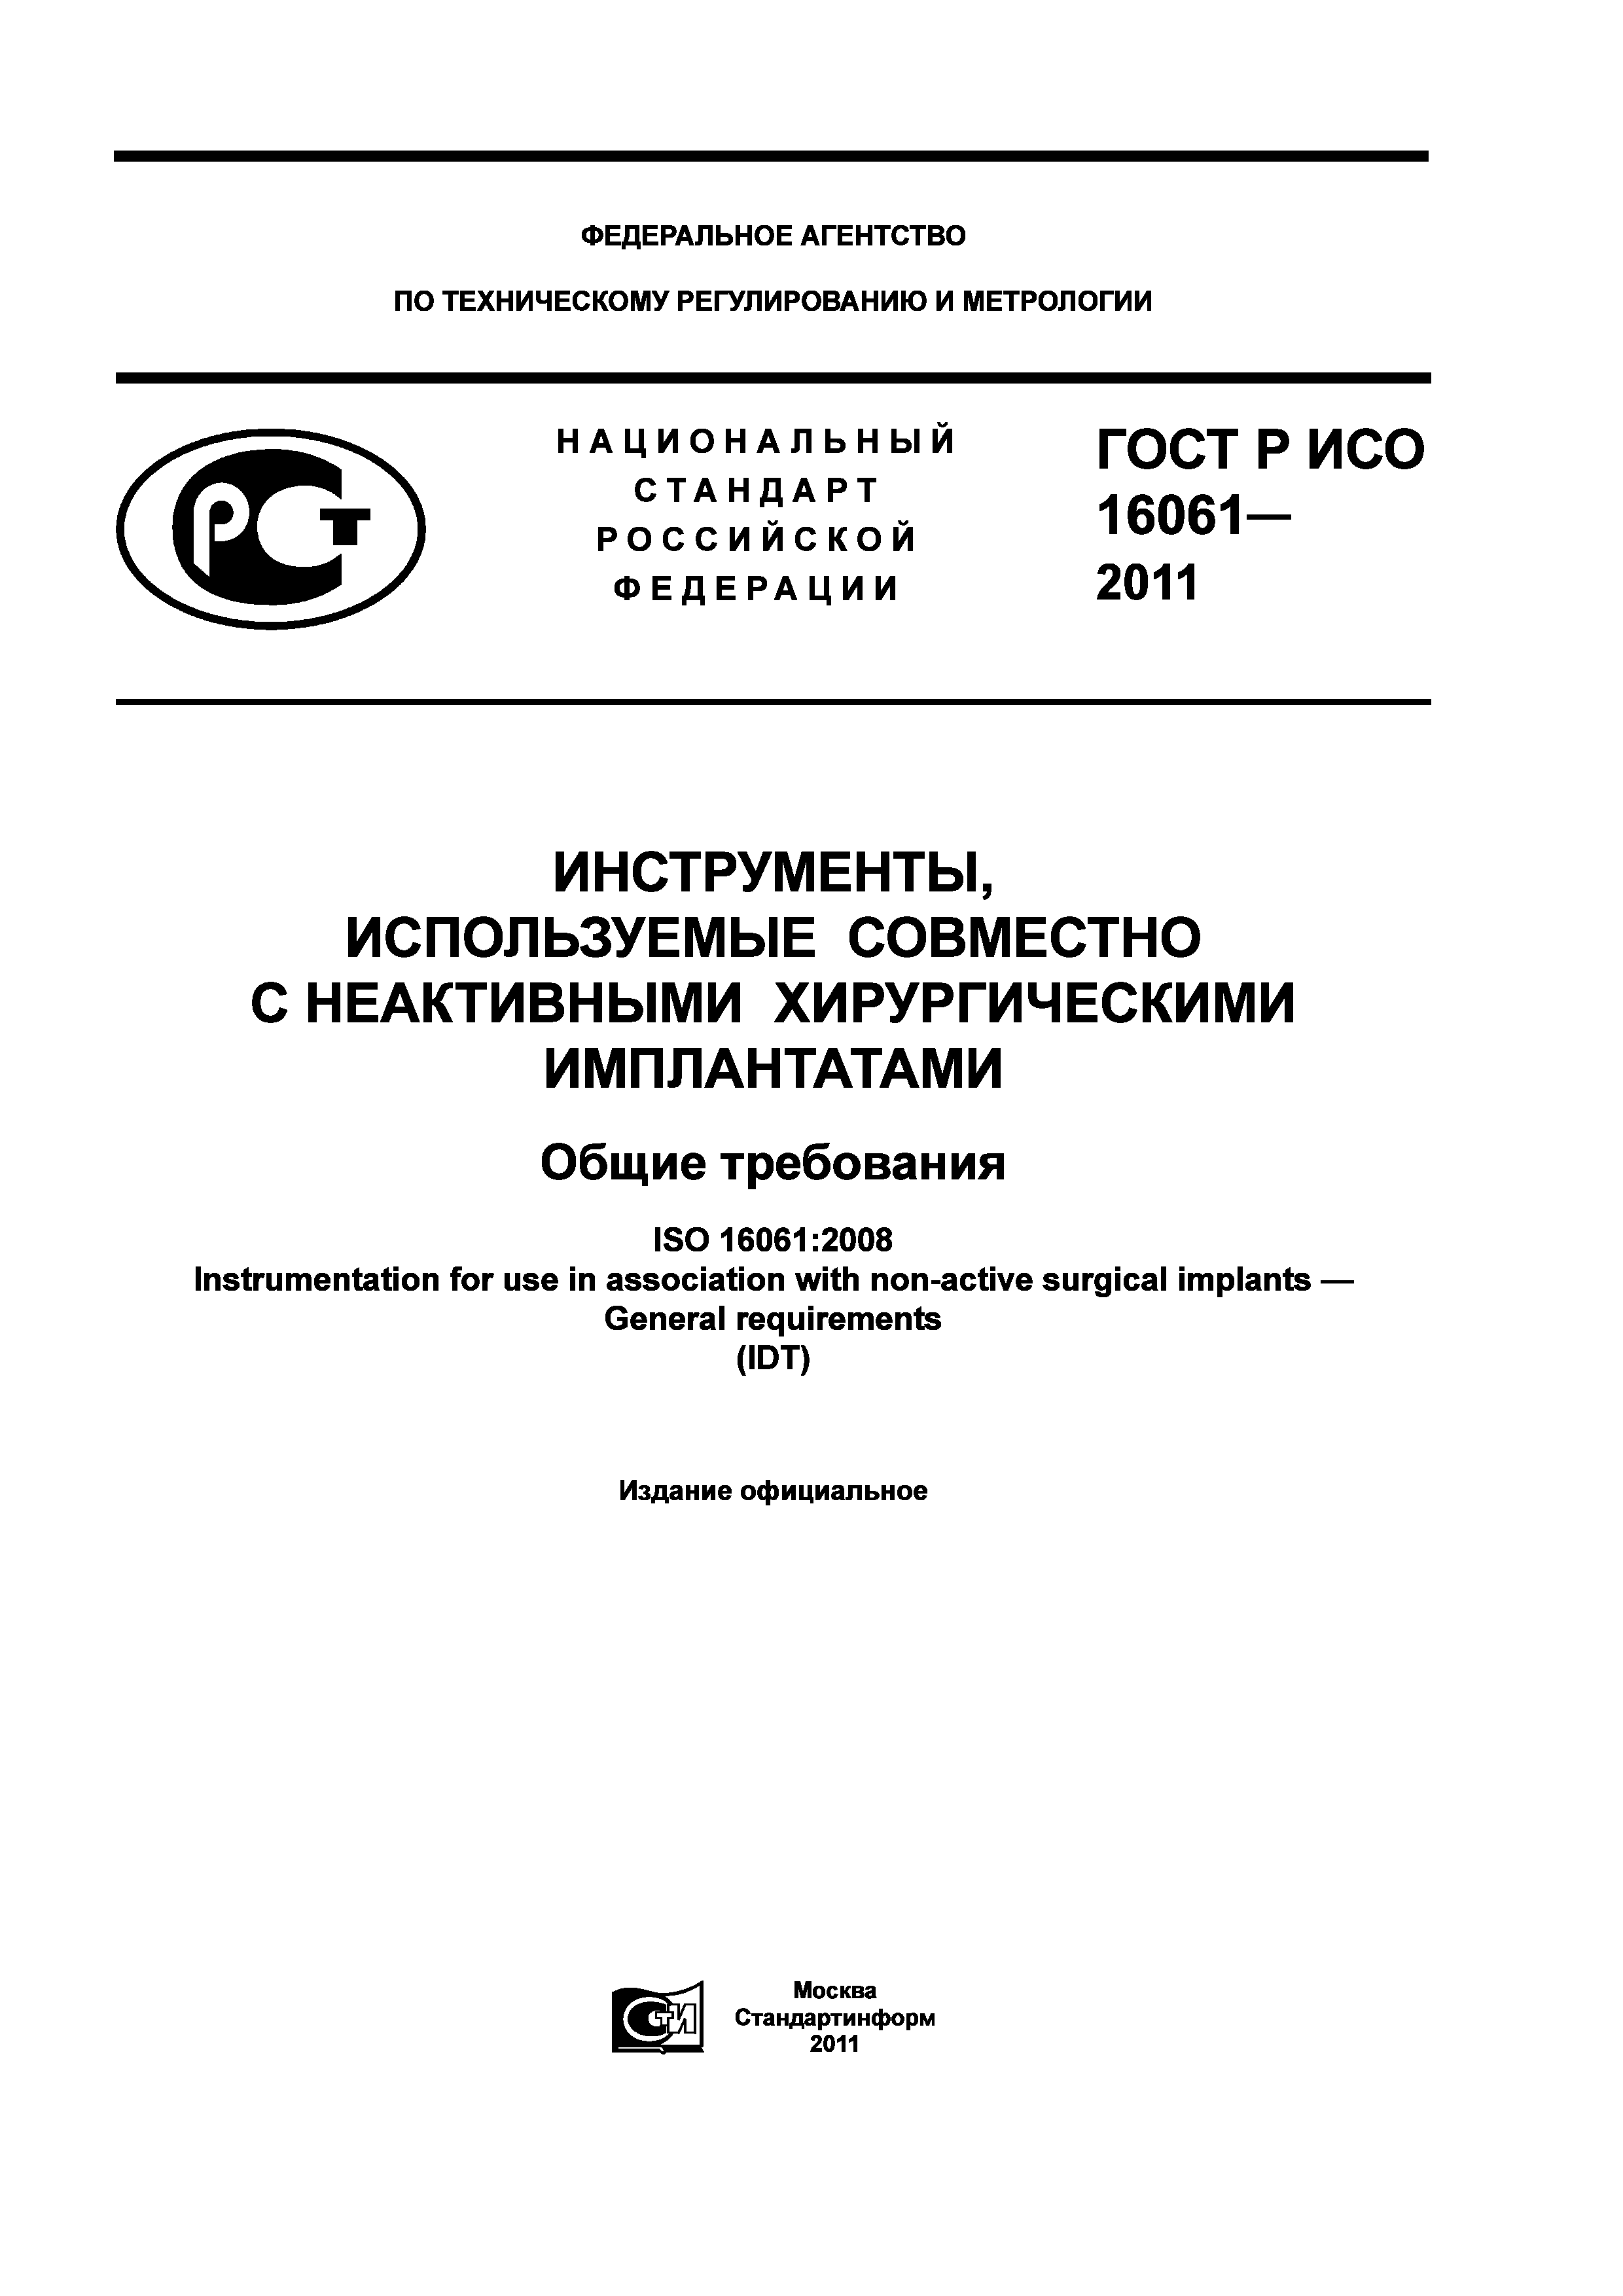 ГОСТ Р ИСО 16061-2011